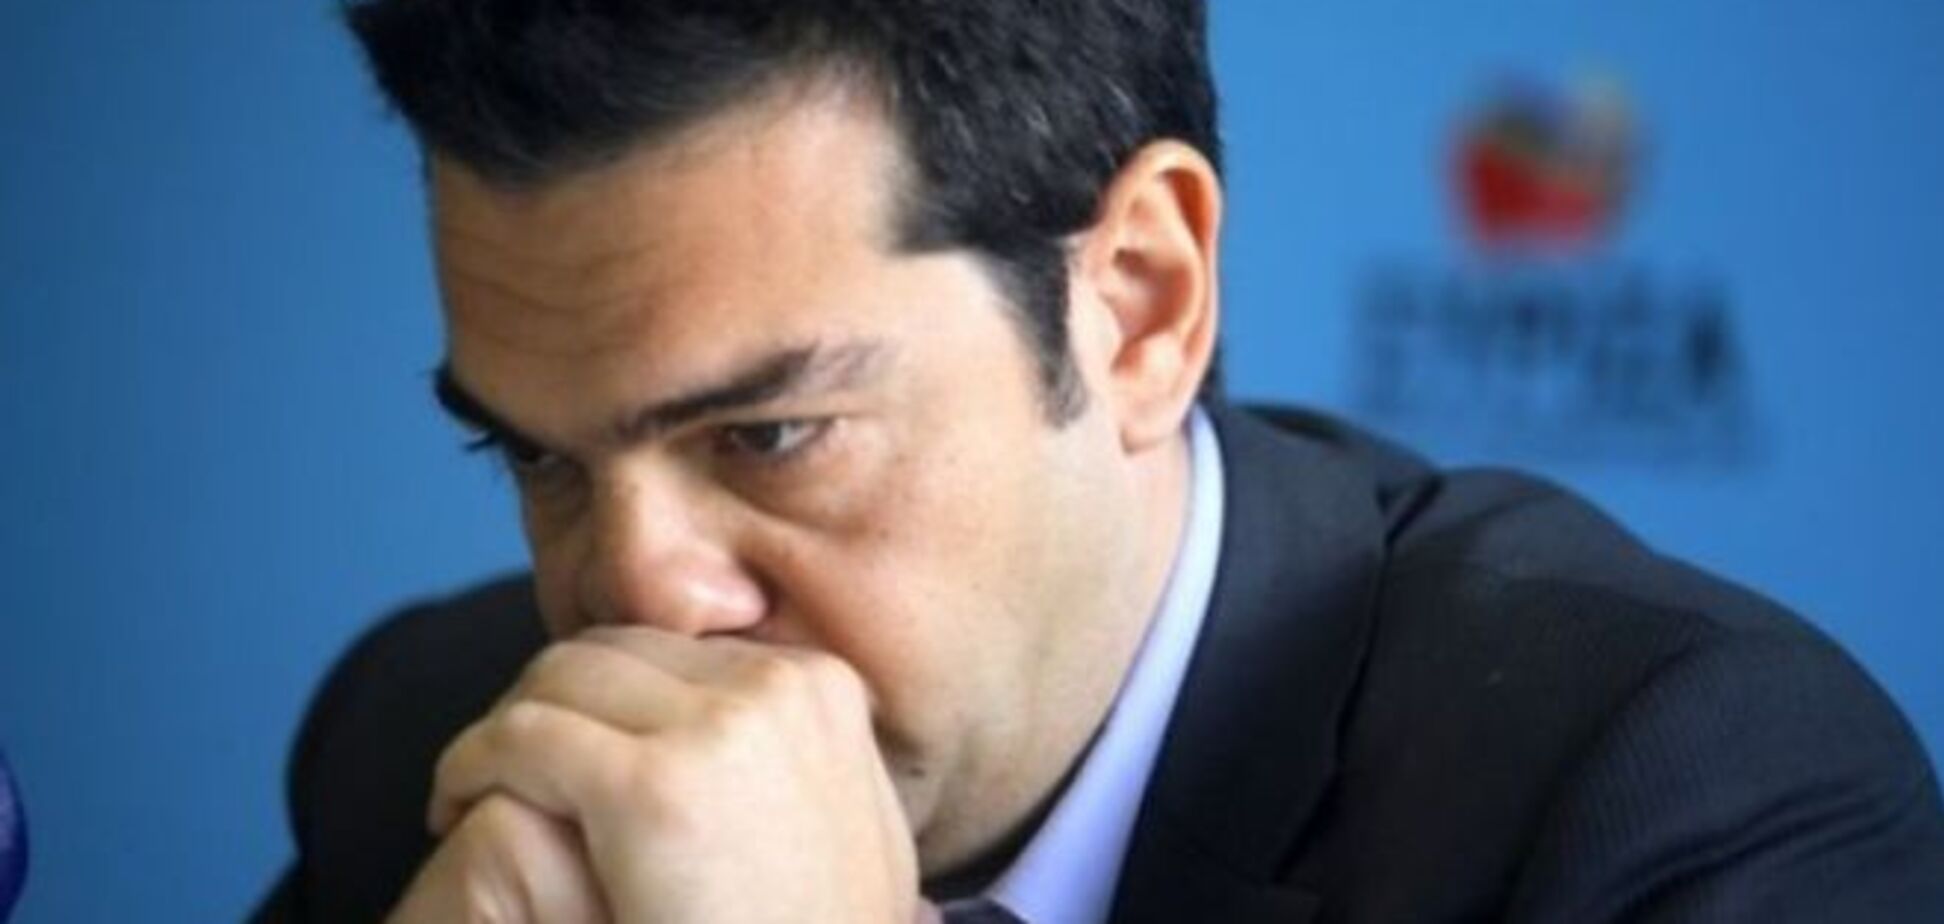 Еще шаг к дефолту: премьер Греции не убедил кредиторов 